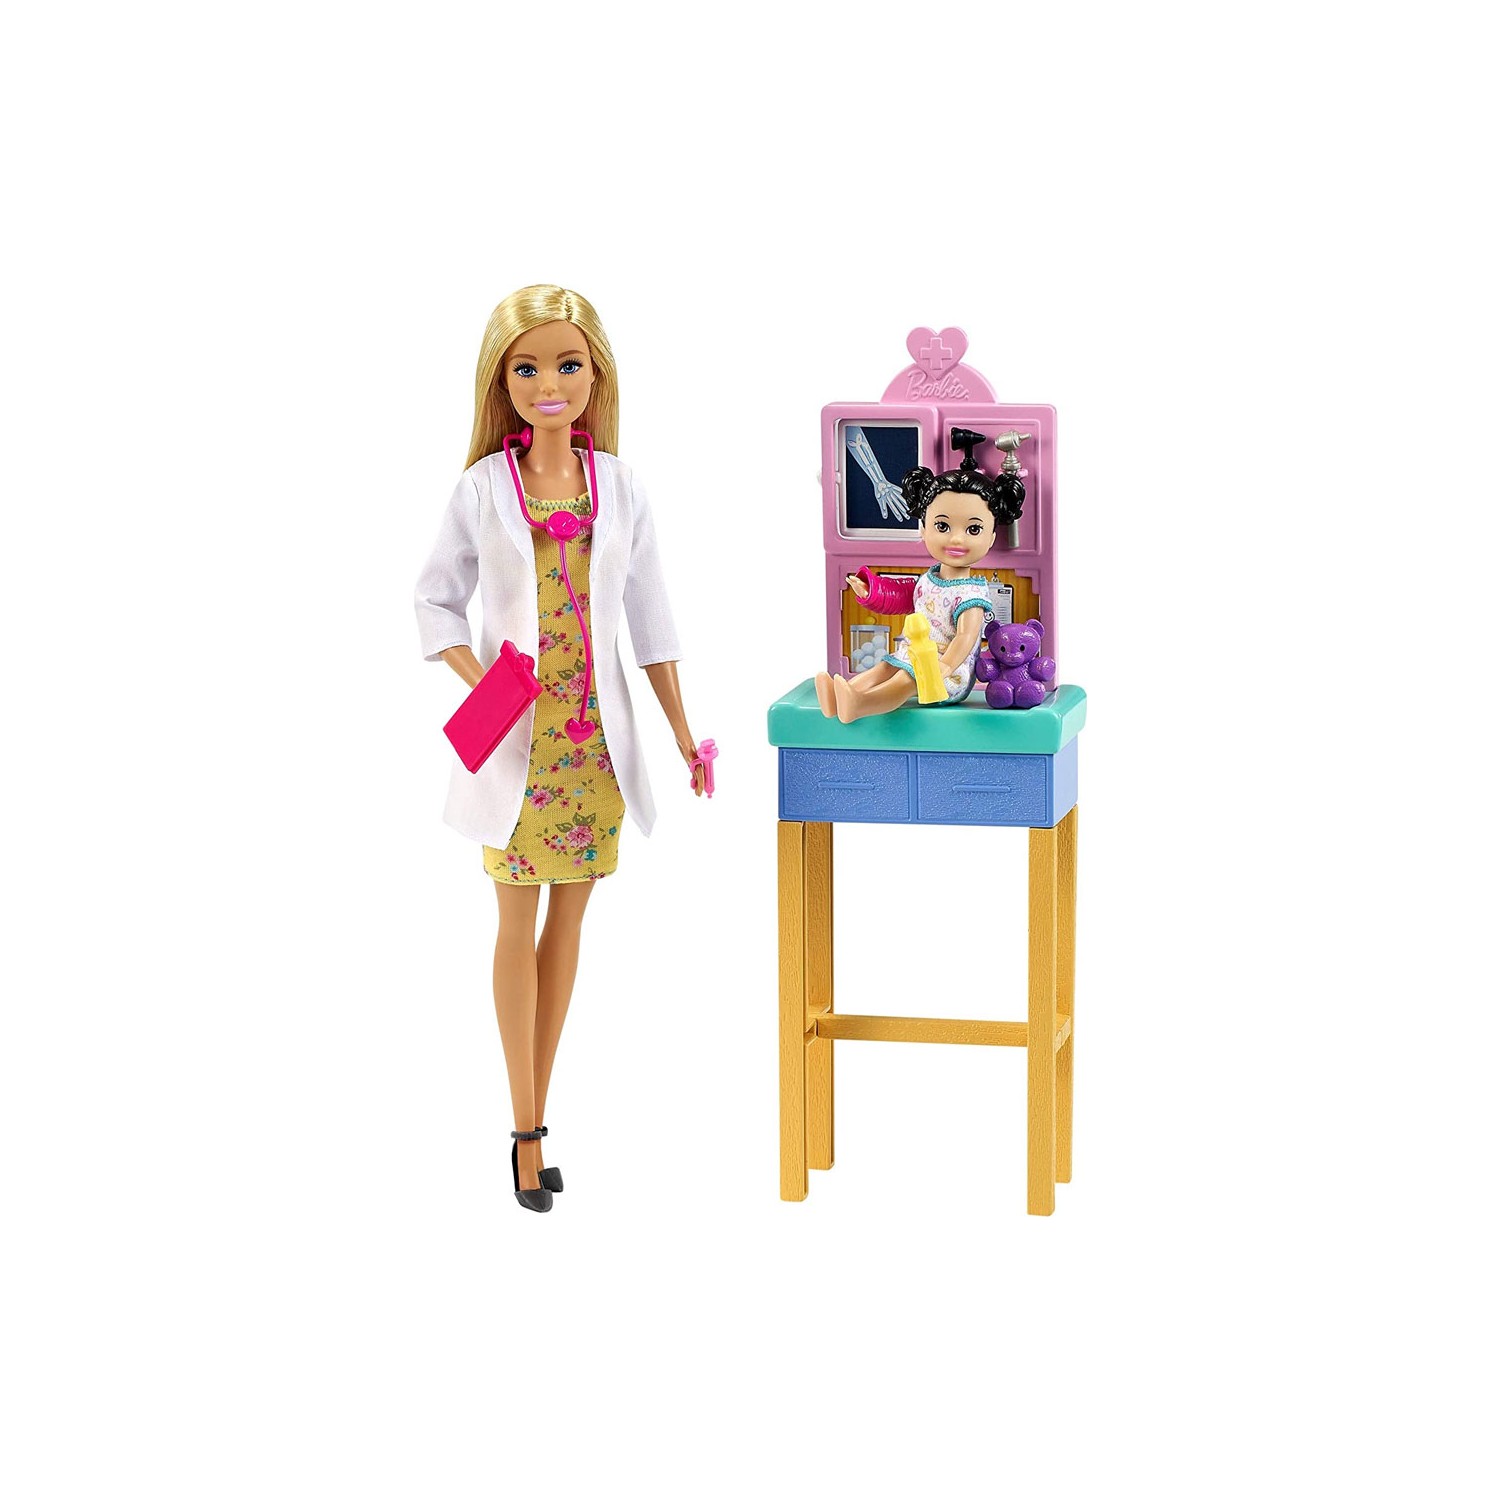 Кукла Barbie врач игровой набор barbie профессии 29 см dhb63 педиатр 6 gtn52